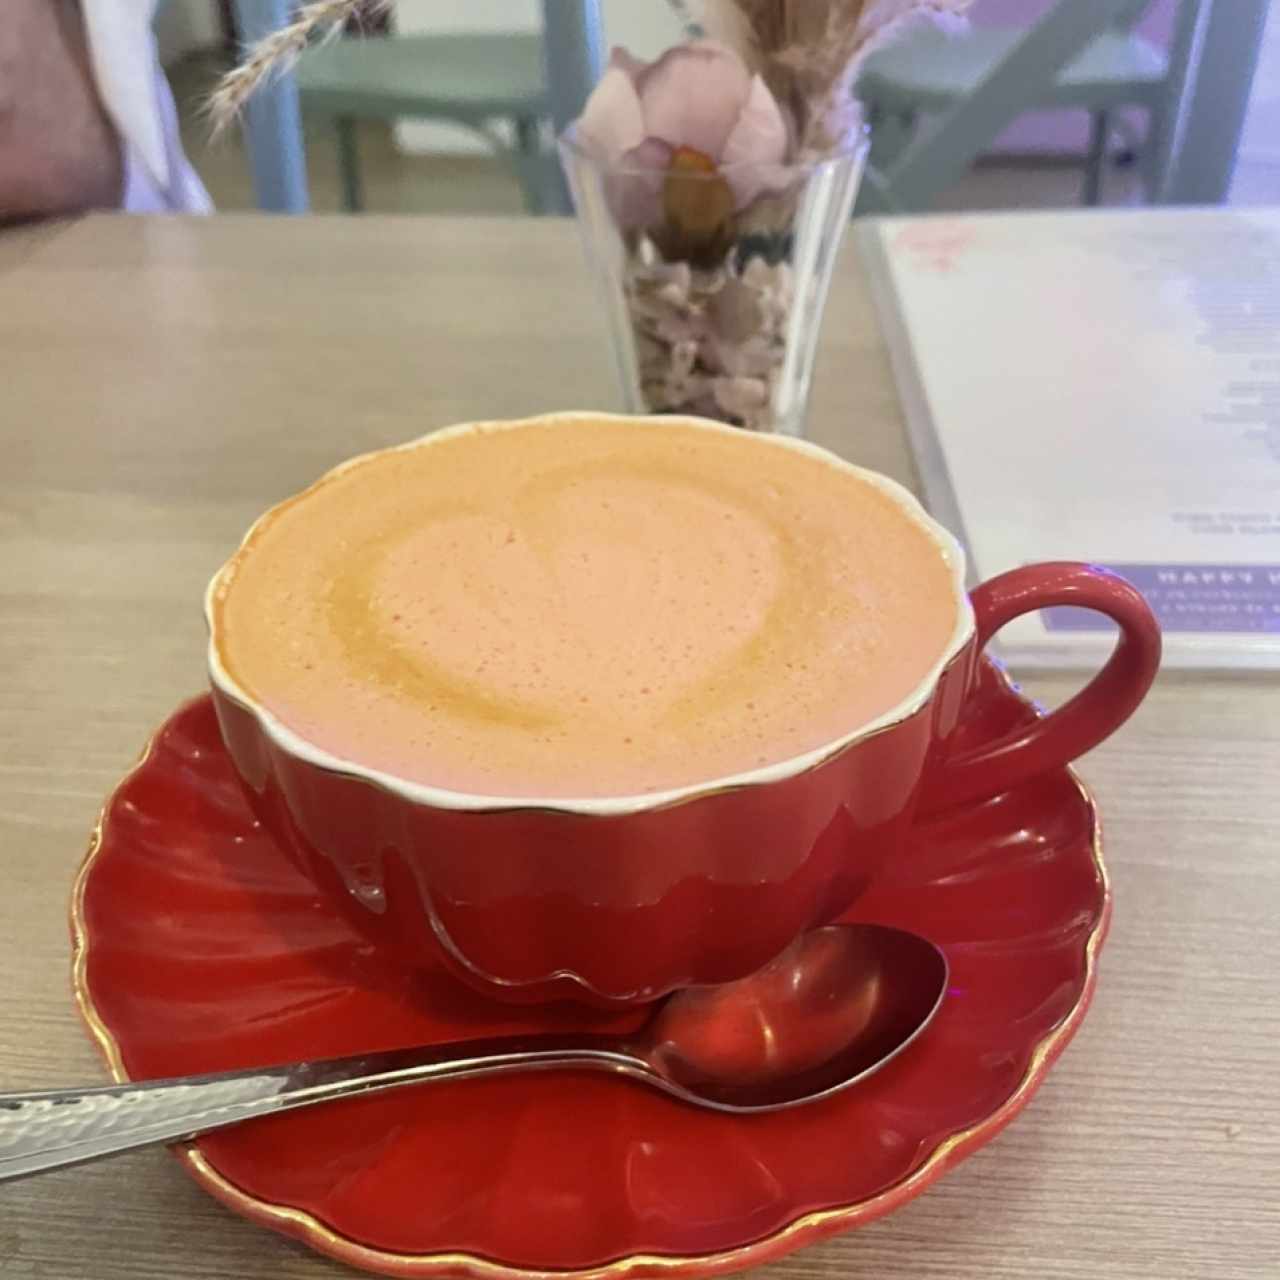 Cafe red velvet